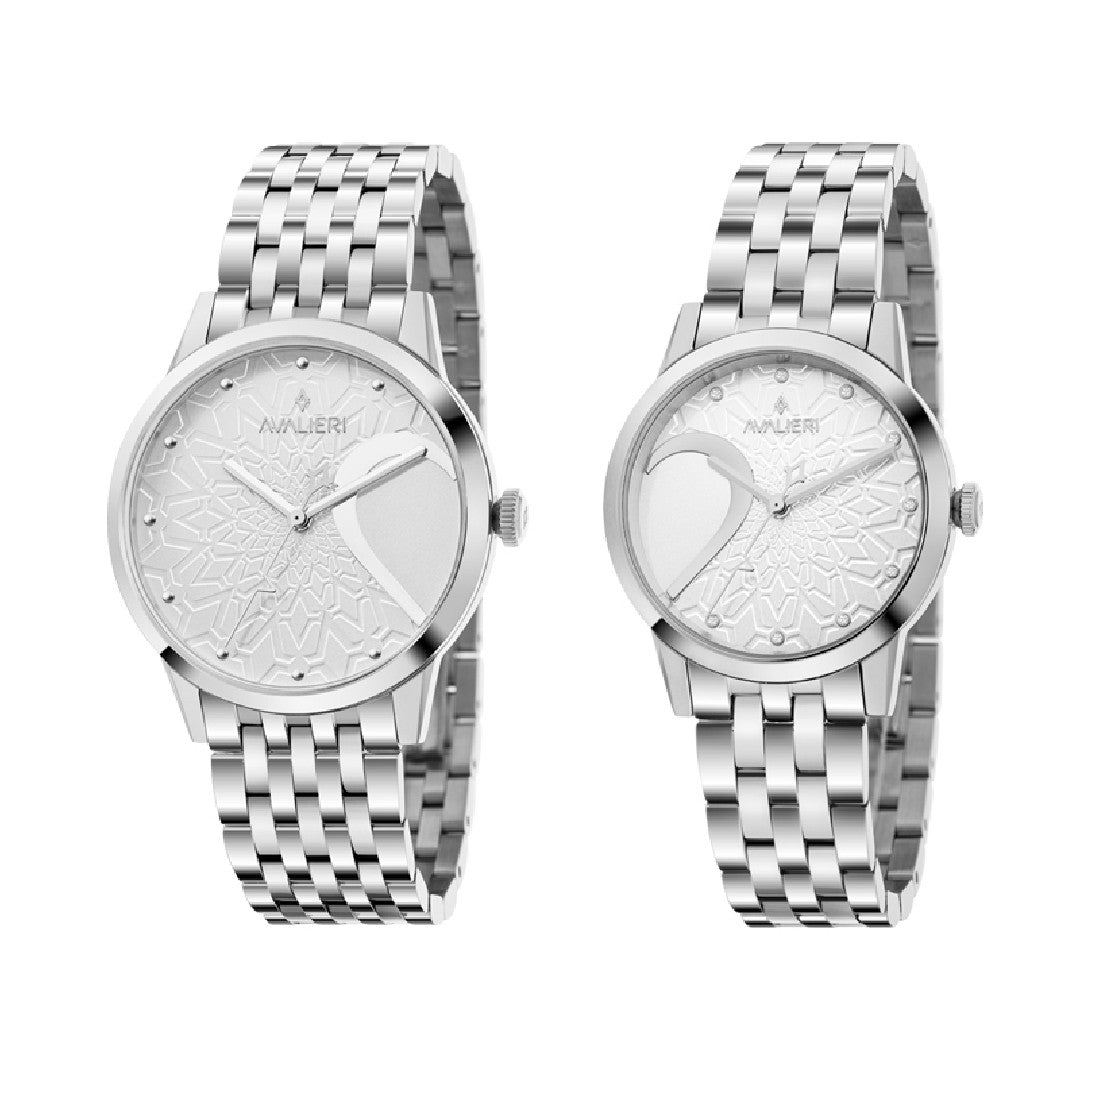 Avalieri Couple Watch Set, Quartz, Silver Dial - AV-2313B, AV-2321B